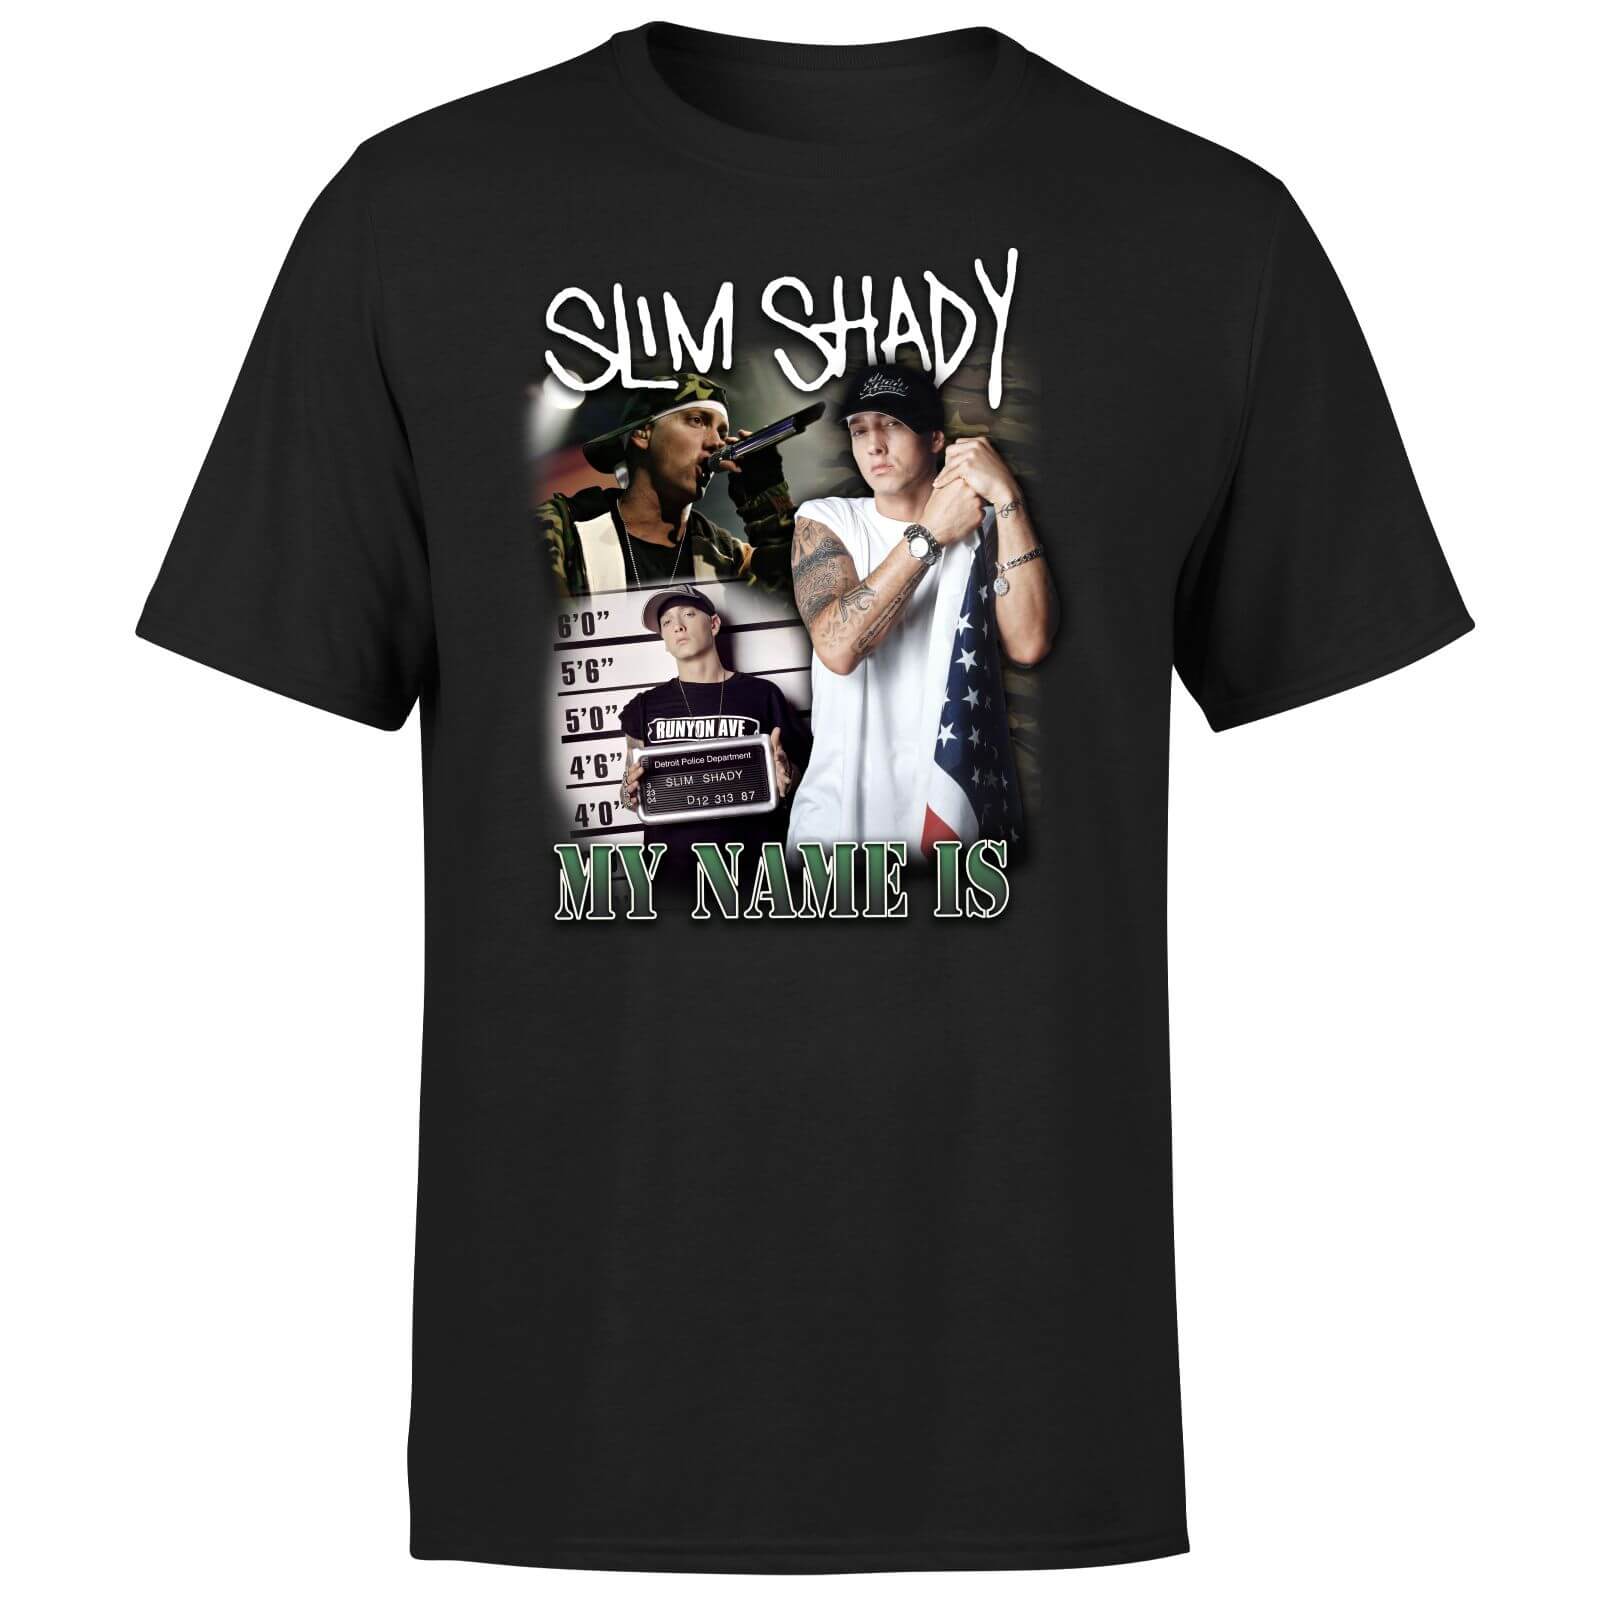 Camiseta My Name Is Slim Shady - Unisex - Negro - M